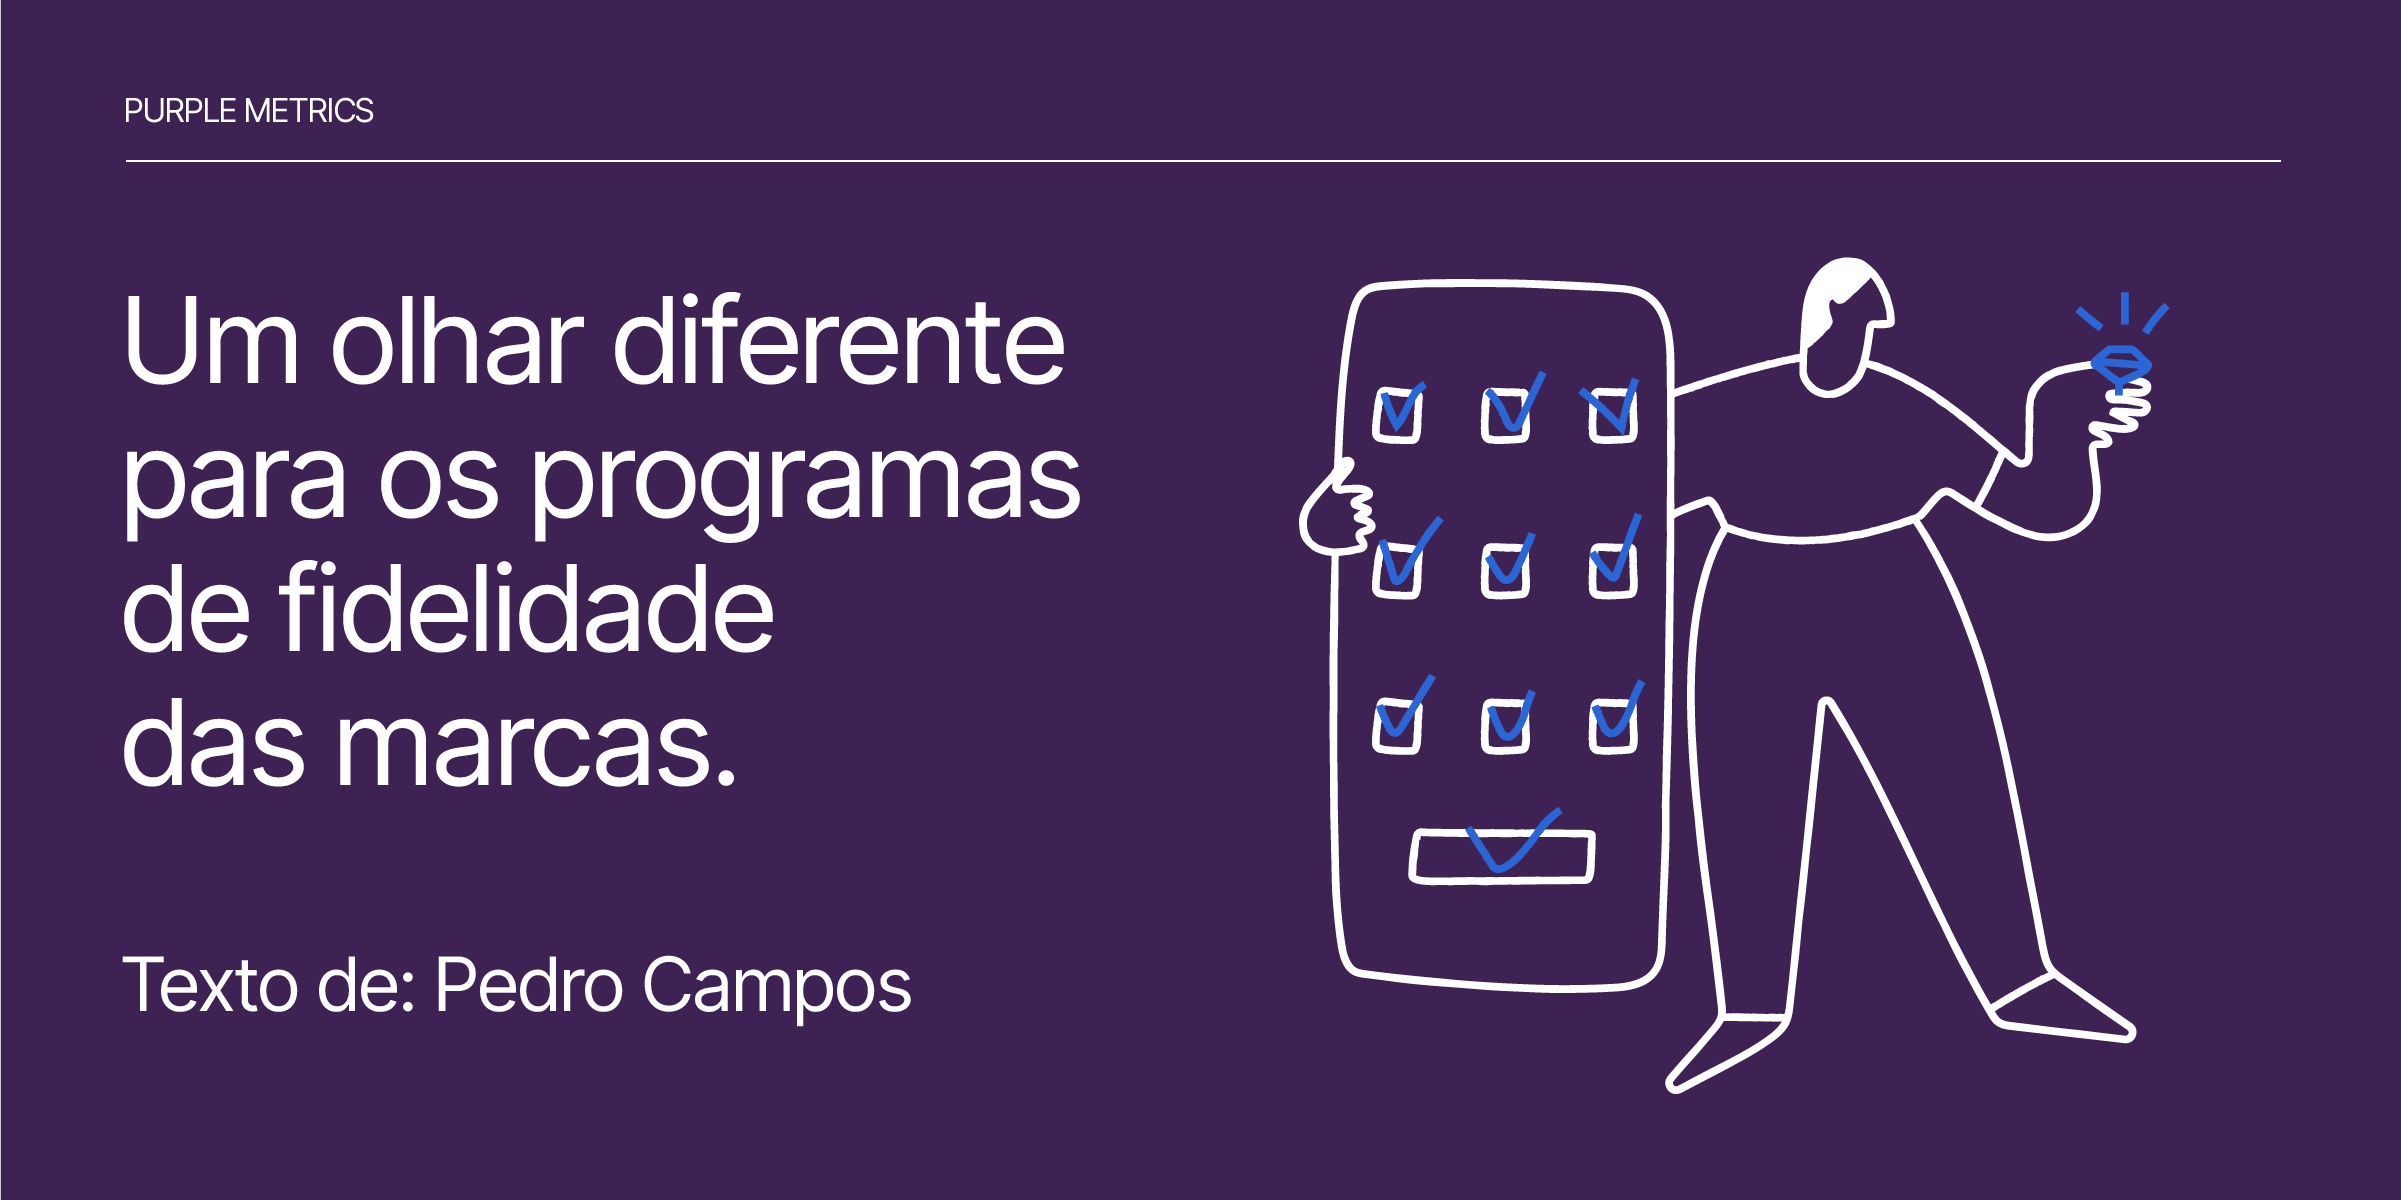 Um olhar diferente para os programas de fidelidade das marcas - Pedro Campos para Purple Metrics